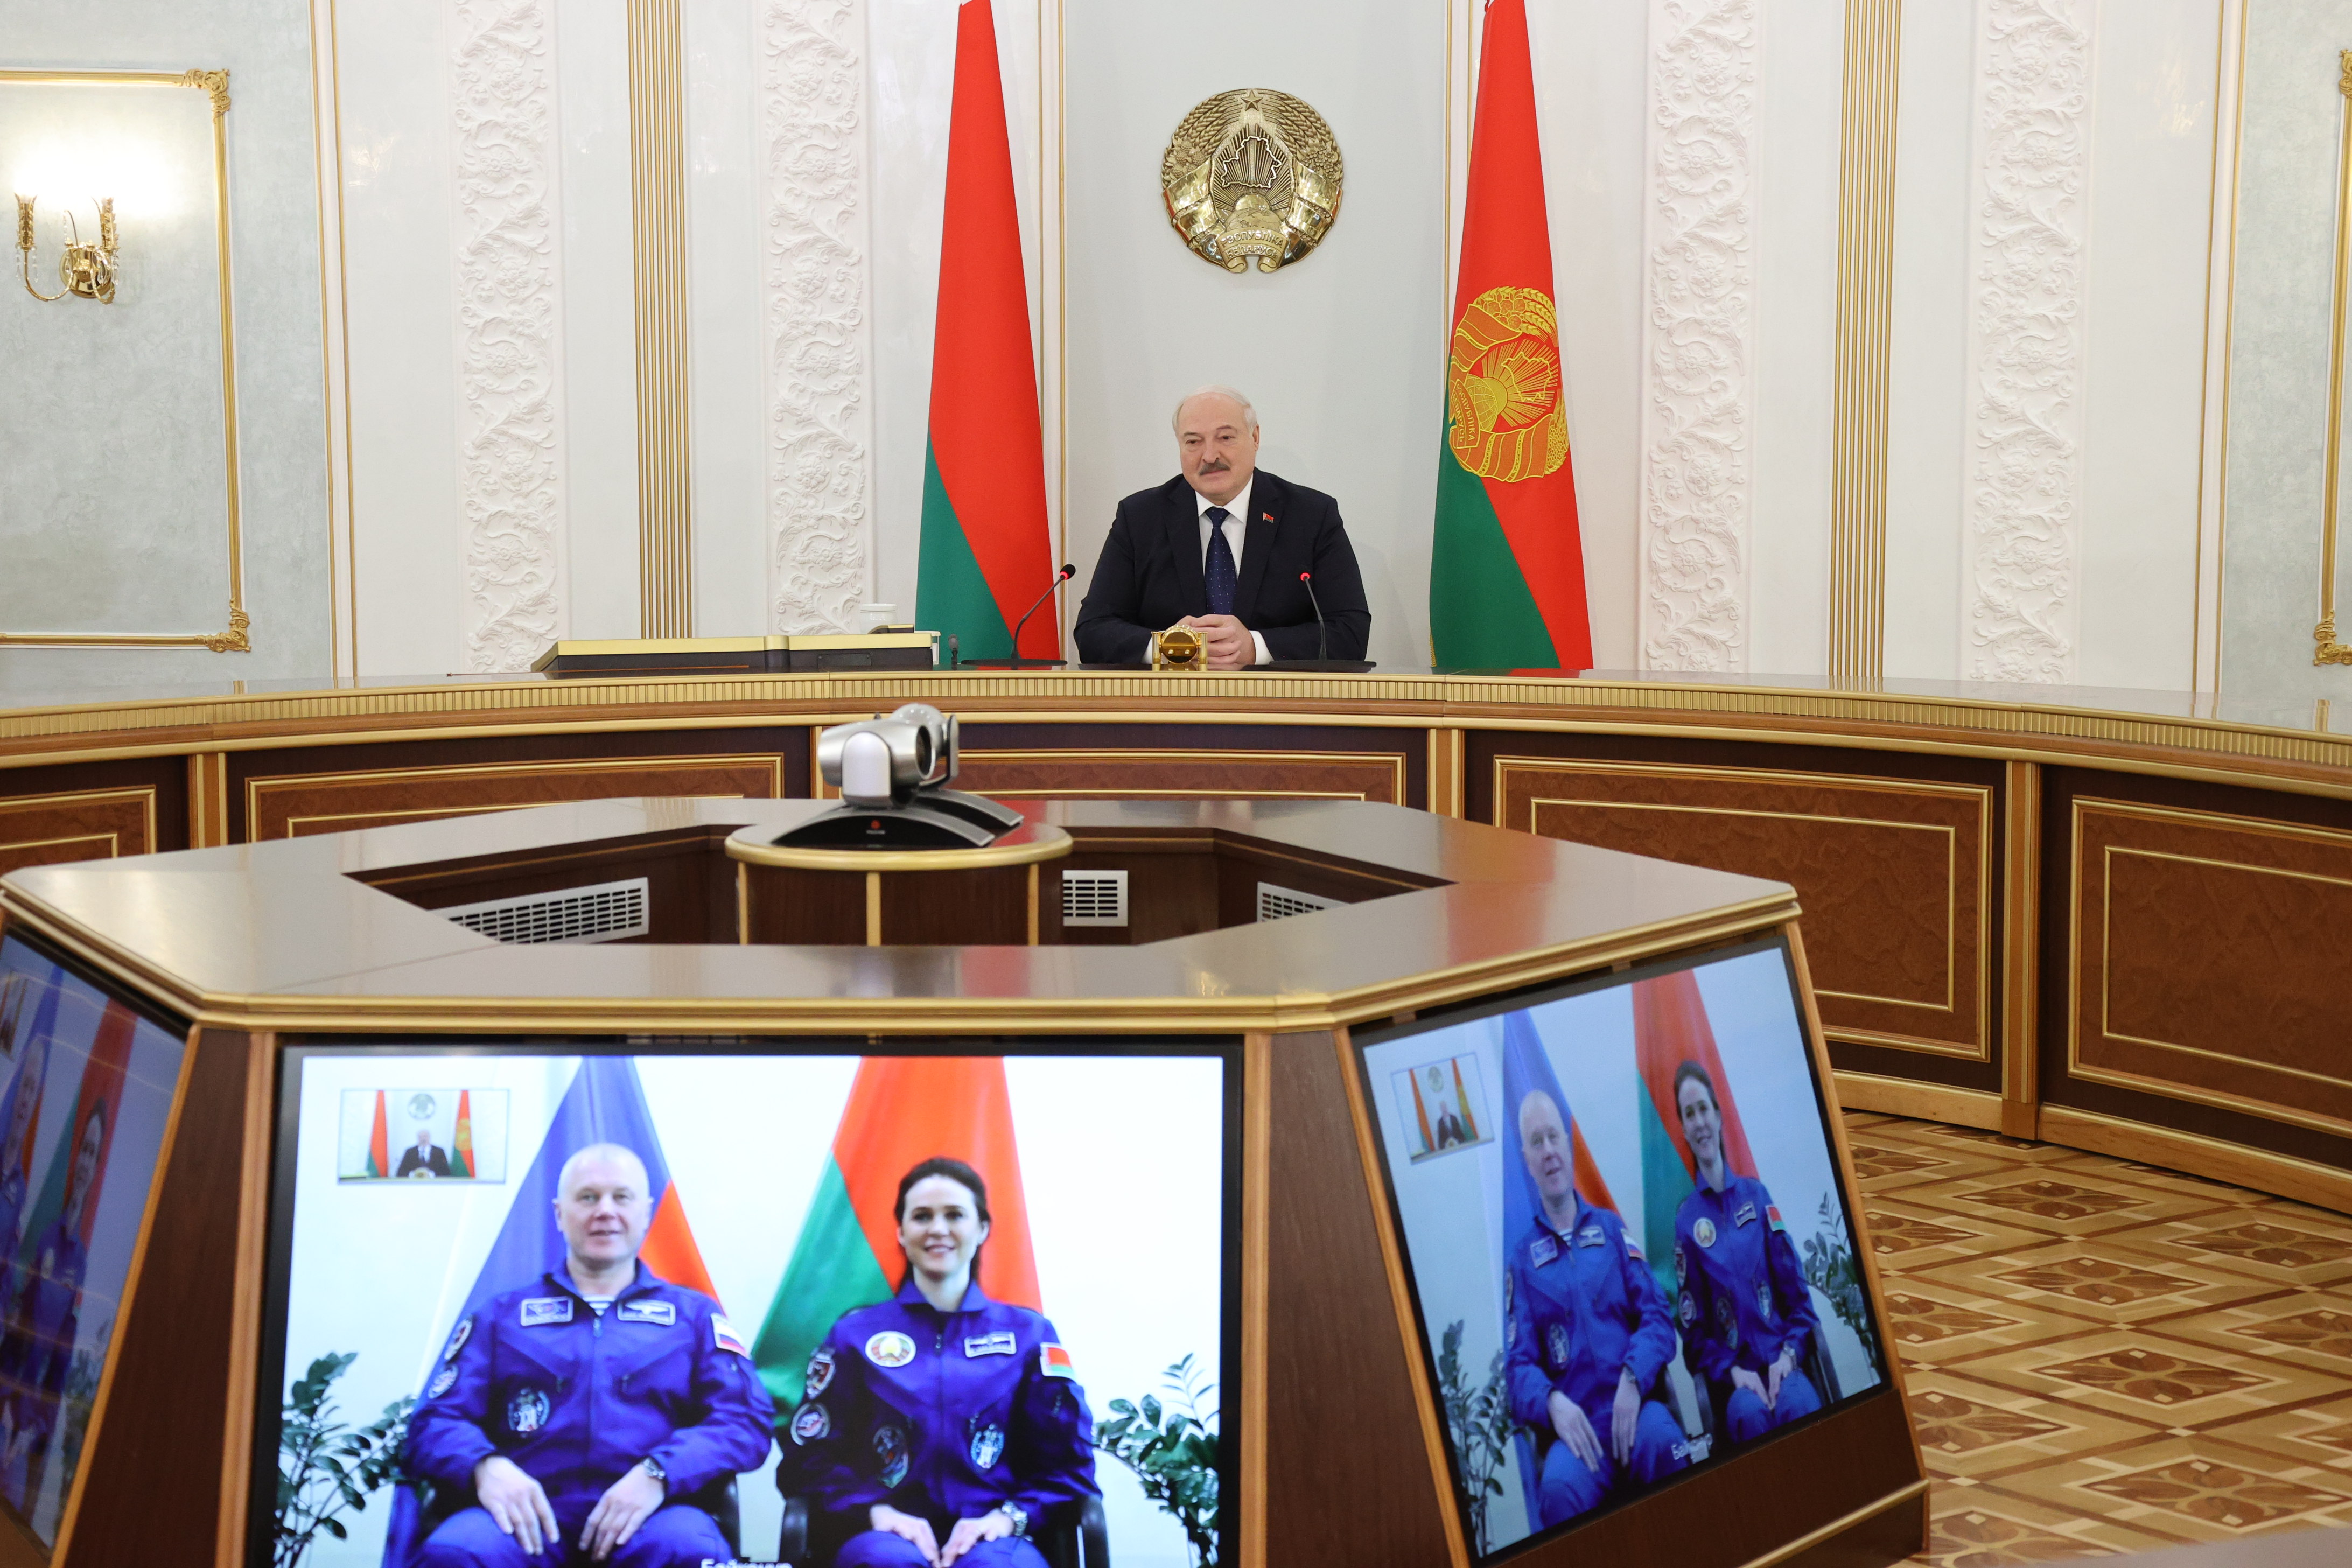 Лукашенко дал напутствие Новицкому и Василевской перед стартом: вы - наши люди